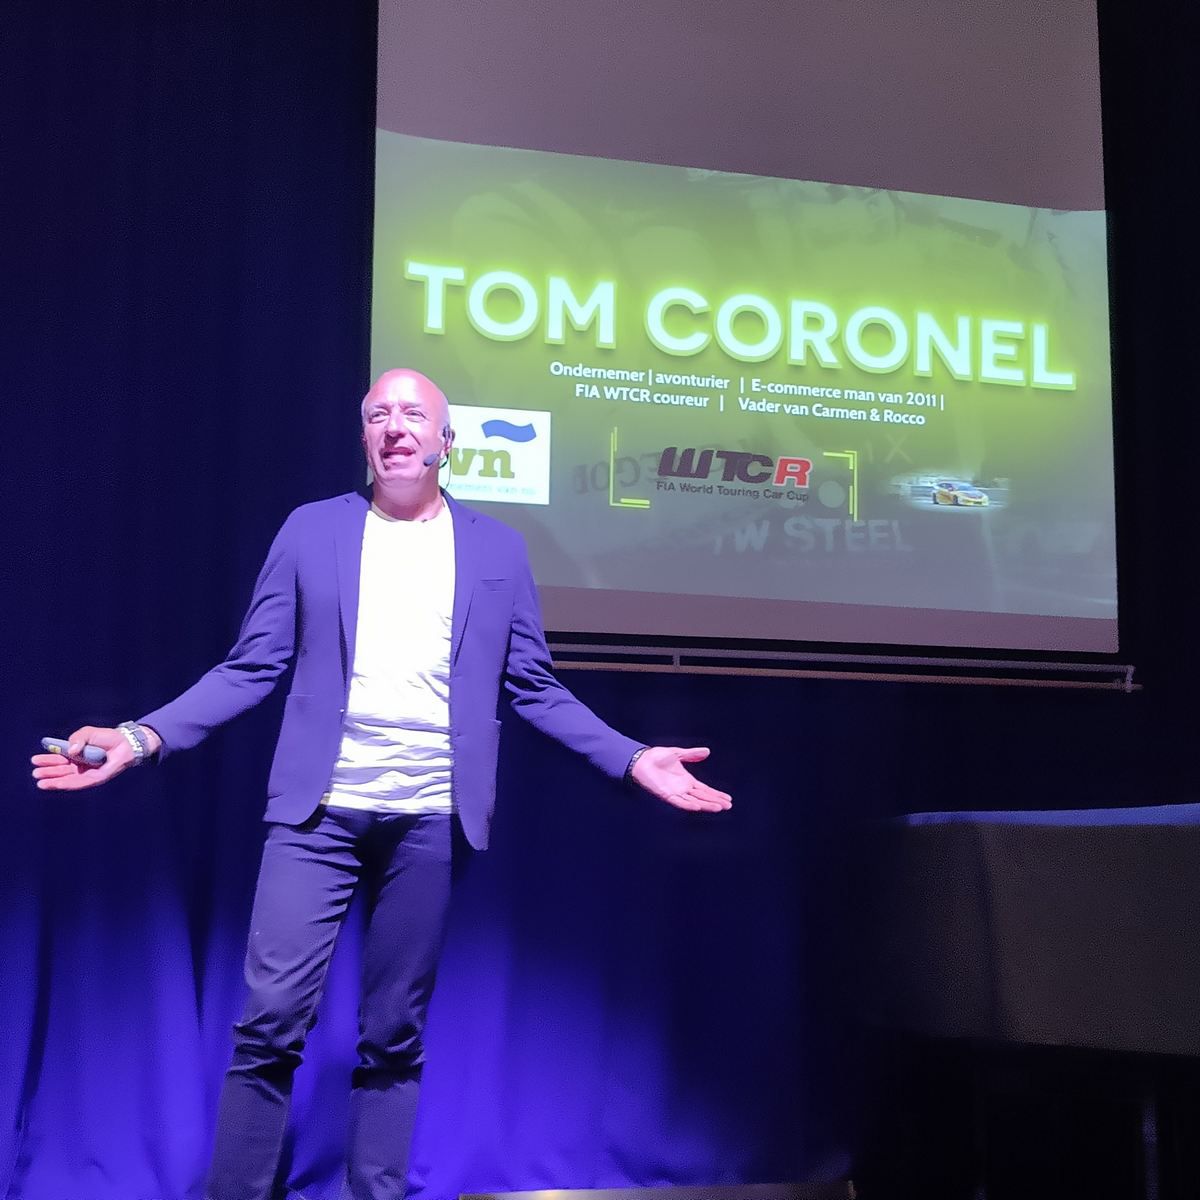 Avond met spreker Tom Coronel groot succes